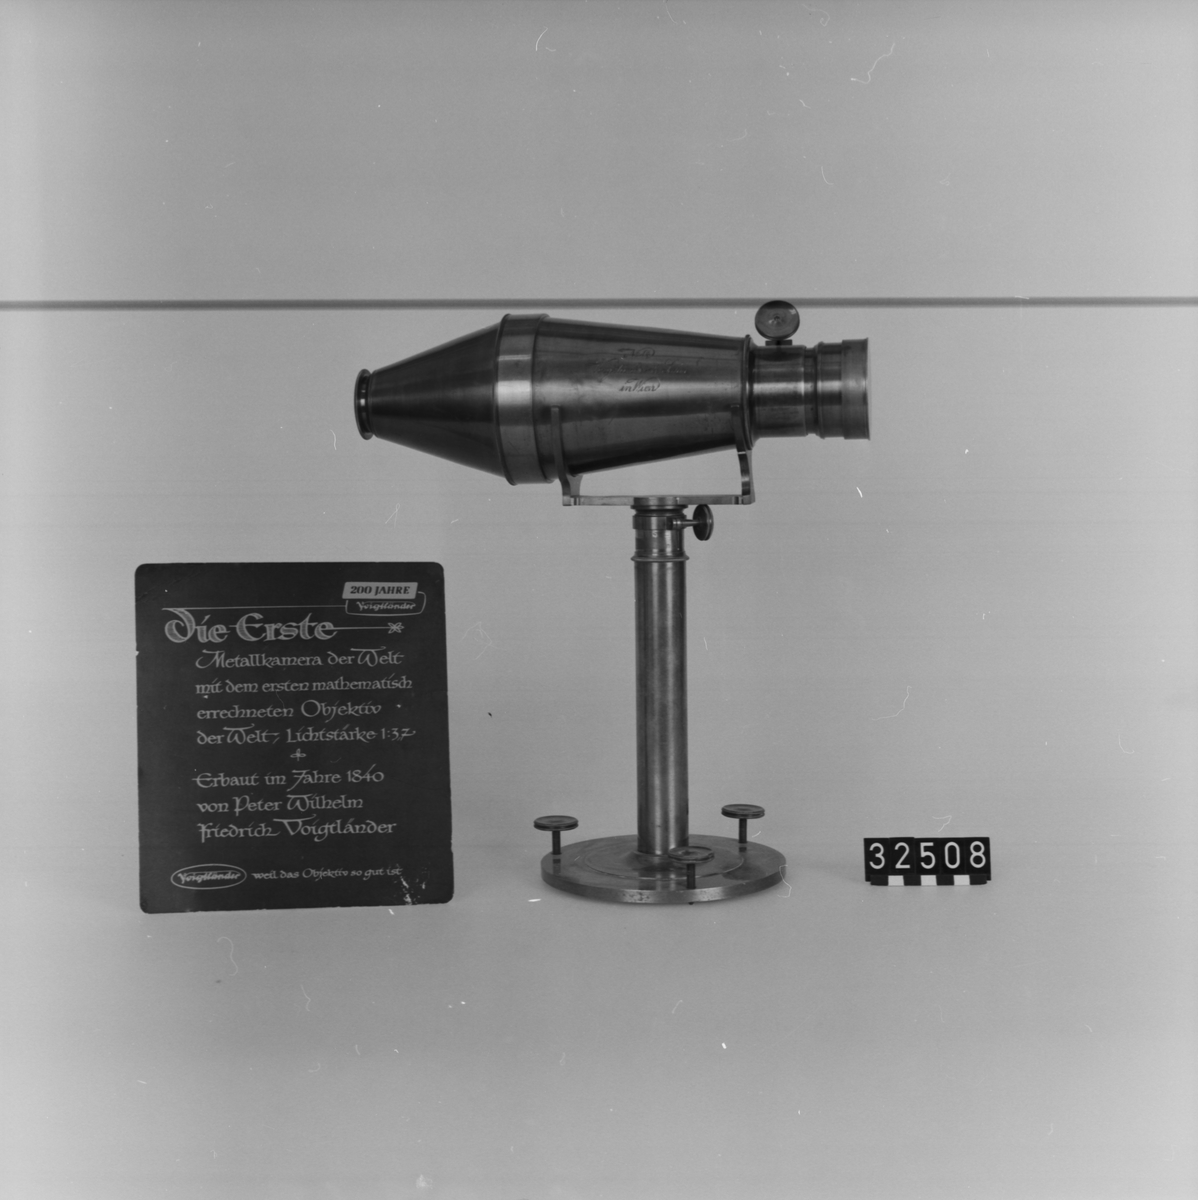 Kopia av Voigtländers första metallkamera för Daguerreotyper (mässingstub). Originalet tillverkades på 1840-talet. Denna kopia med nr. 84 tillverkades troligen c.a. 1930. Ljustyrka 1:3,7. Bildstorlek c.a. 100 mm/diam. Kamerakropp på fot med ställskruvar, två byglar för uppläggning av kameran. Stativ, diameter: 155 mm, höjd: 295 mm.